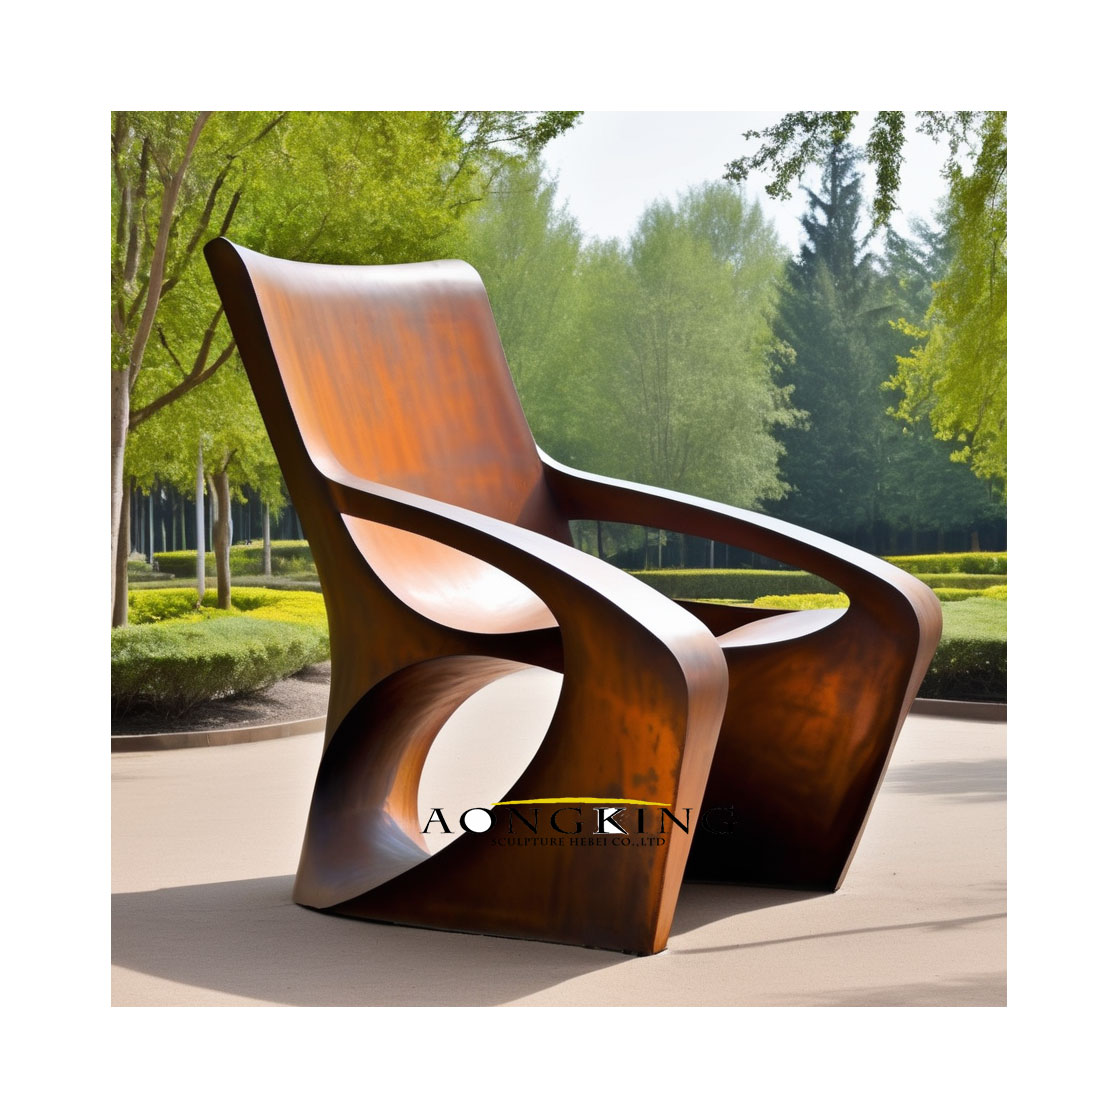 seat corten steel sculpture